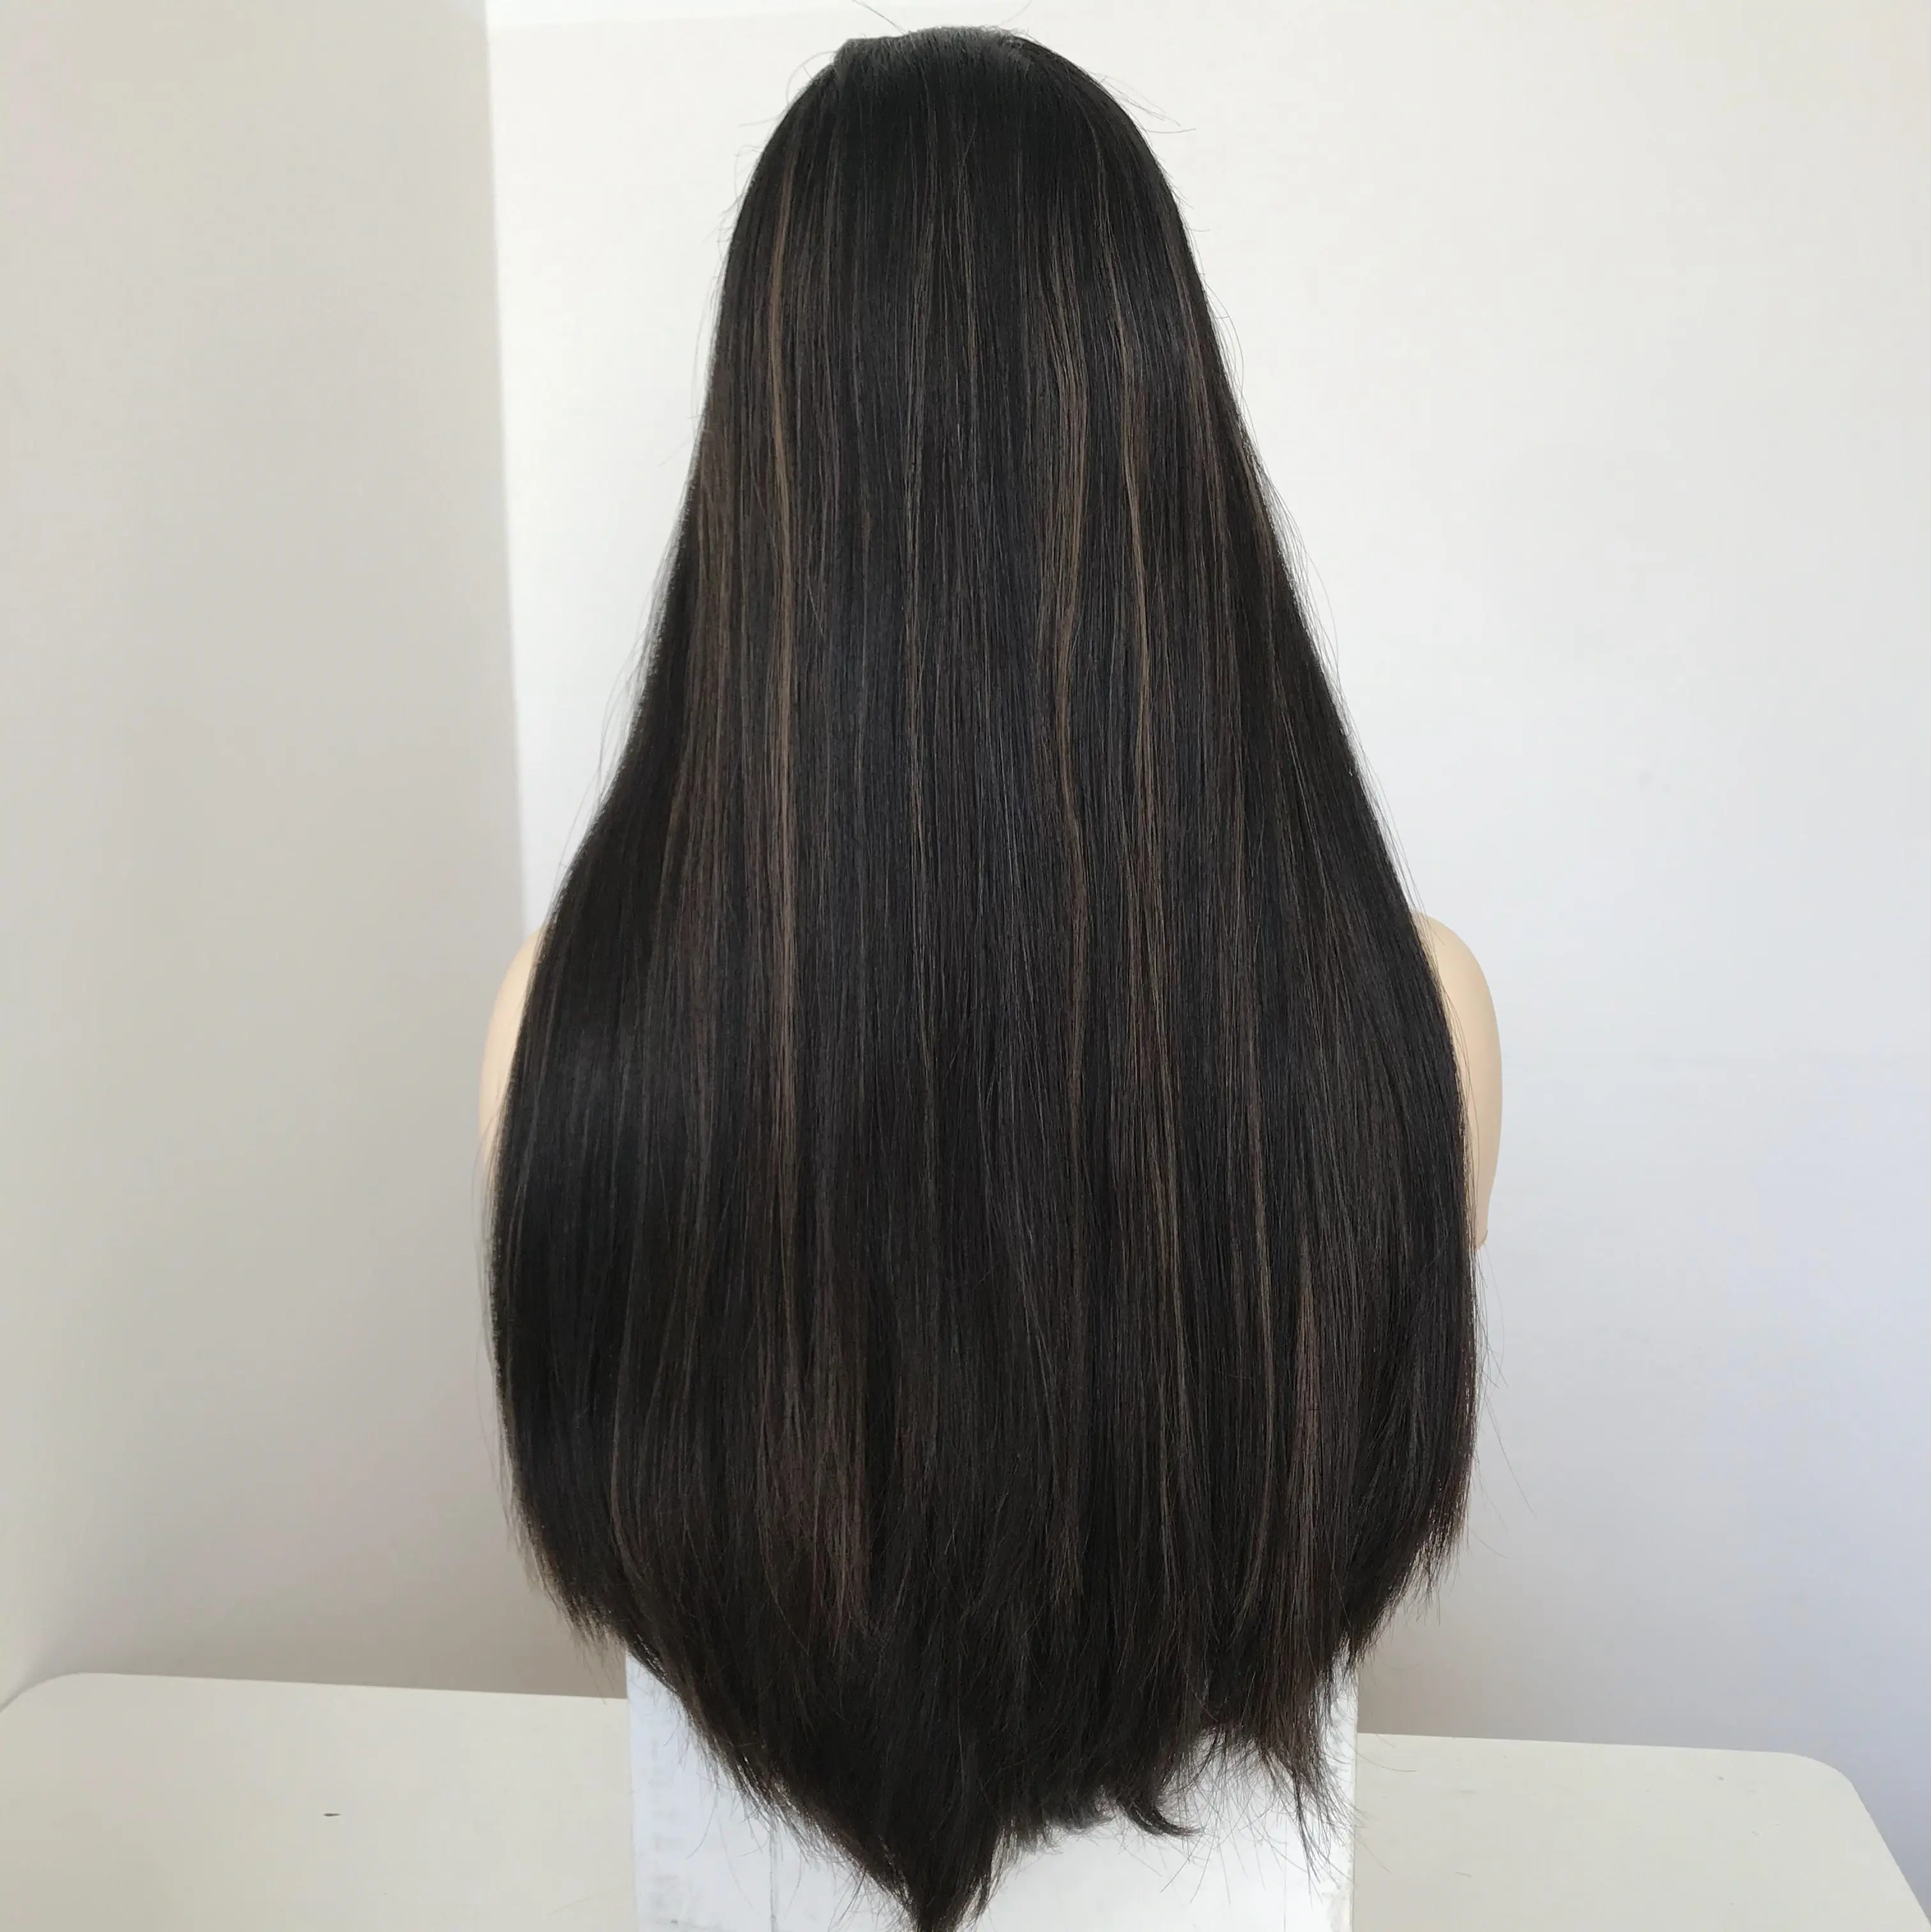 T101 اليهودية المصنعين شعر مستعار طويل جدا طول الإنسان الشعر مخزون كبير أعلى الدانتيل شعر مستعار كوشير